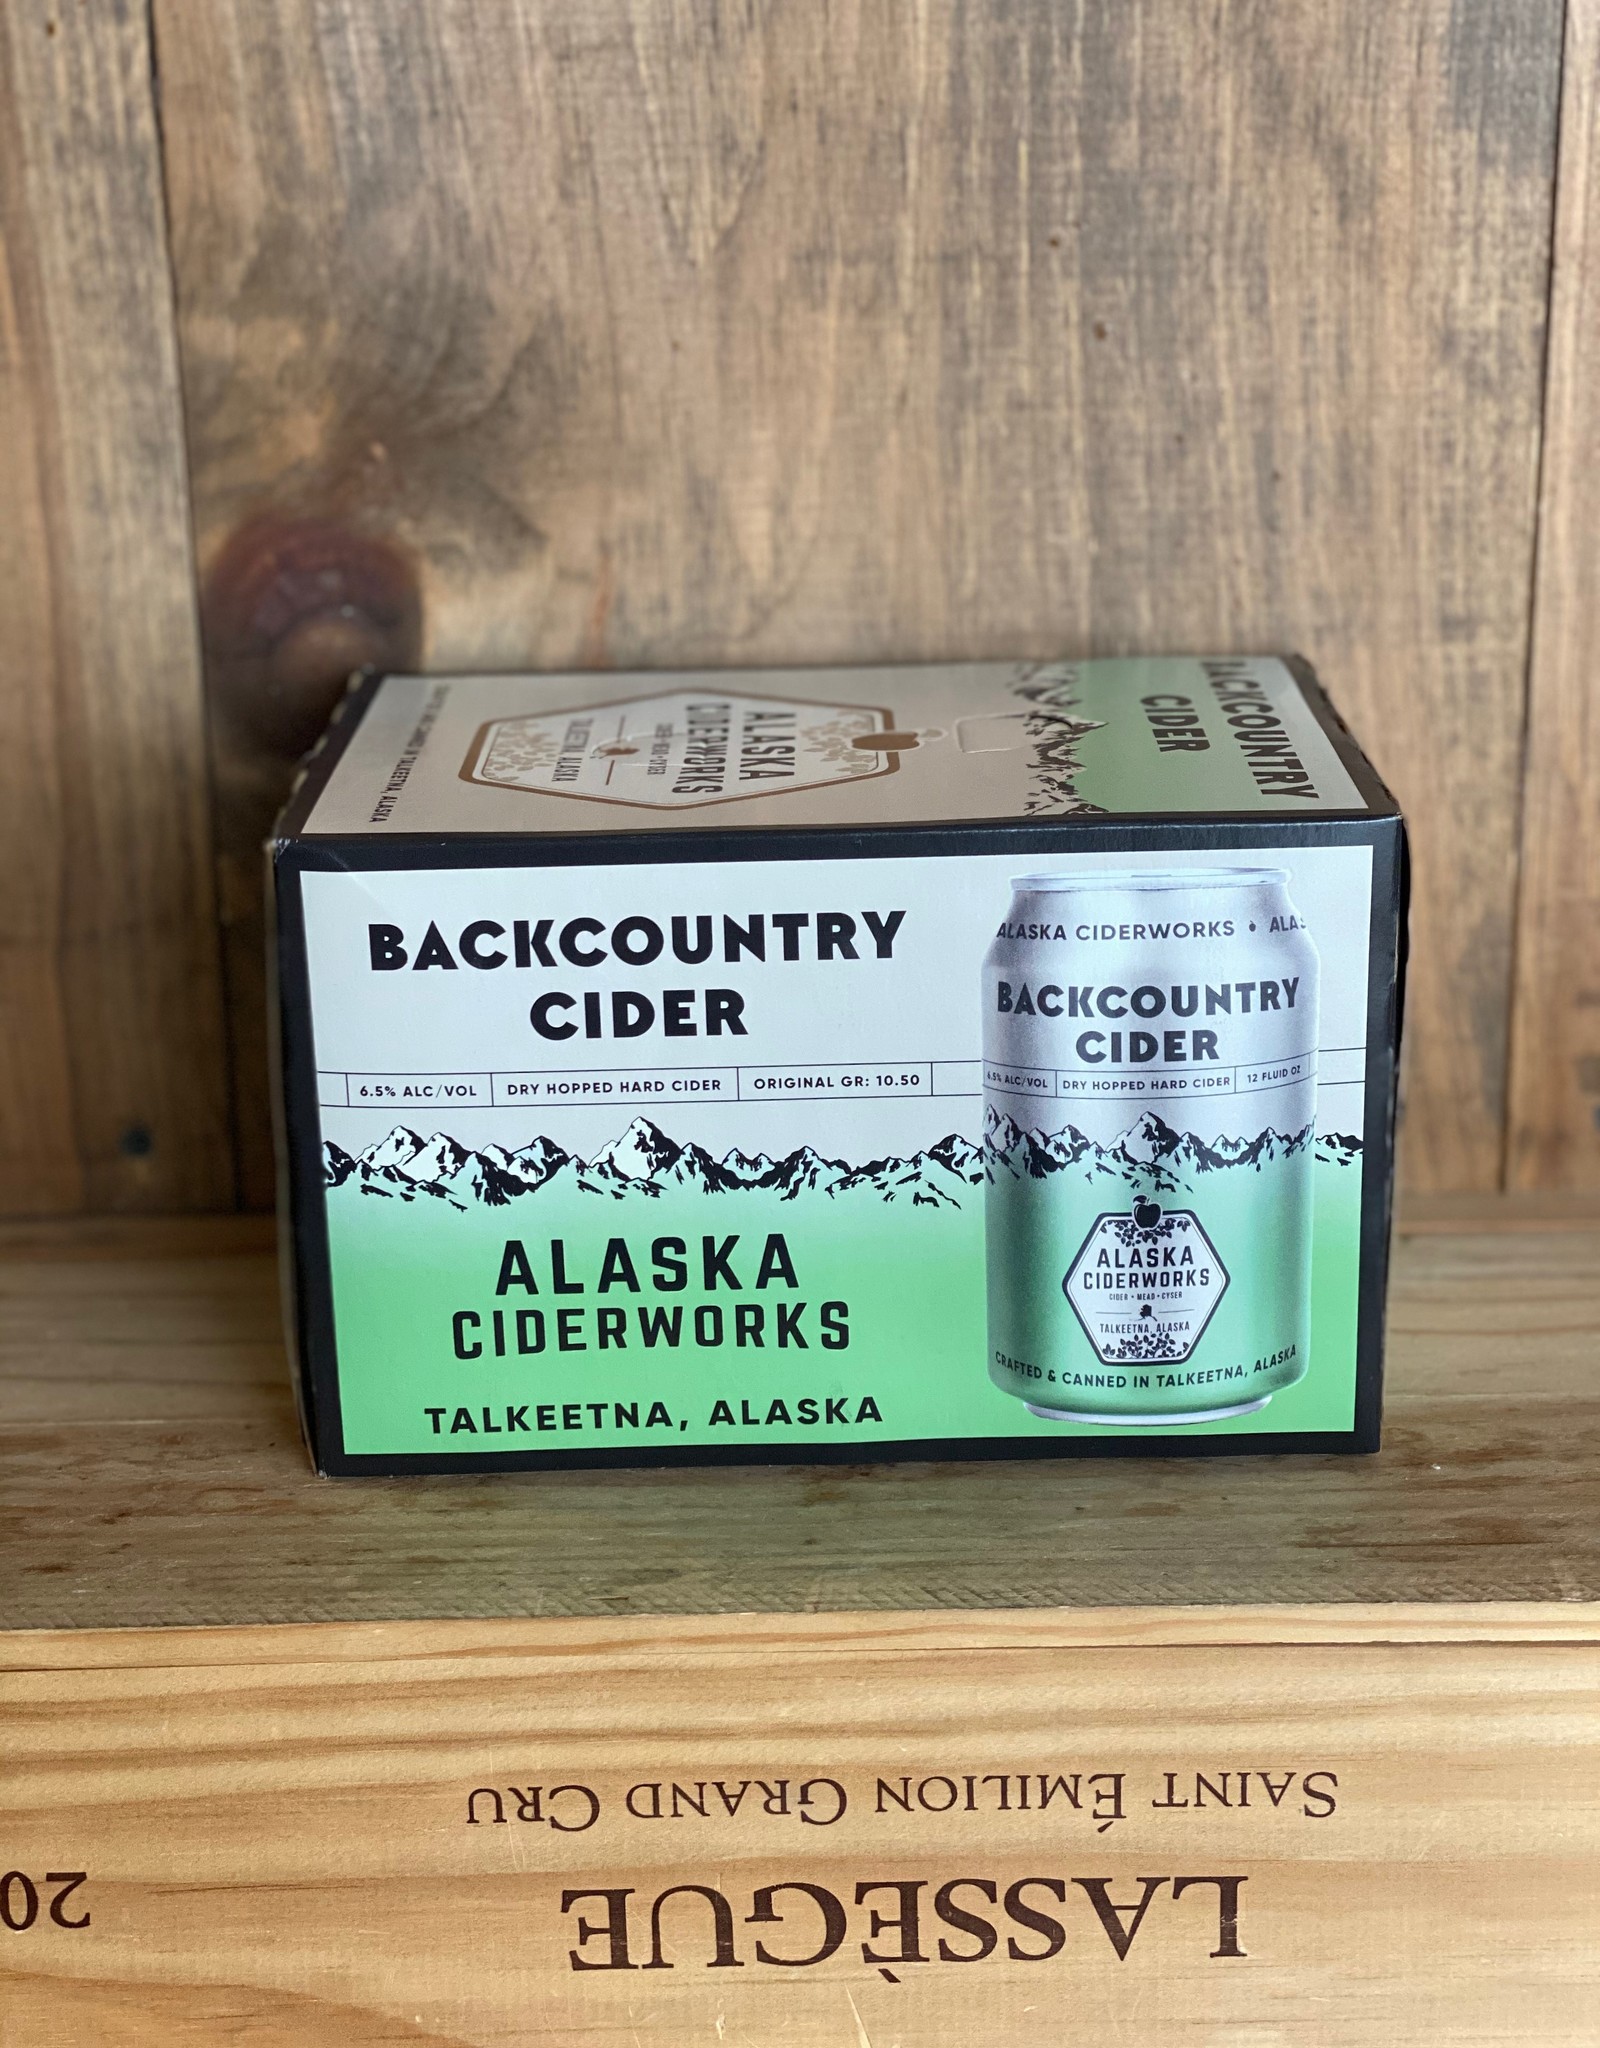 Alaska Meadery Alaska Ciderworks Backcountry Cider Cans 6-pack